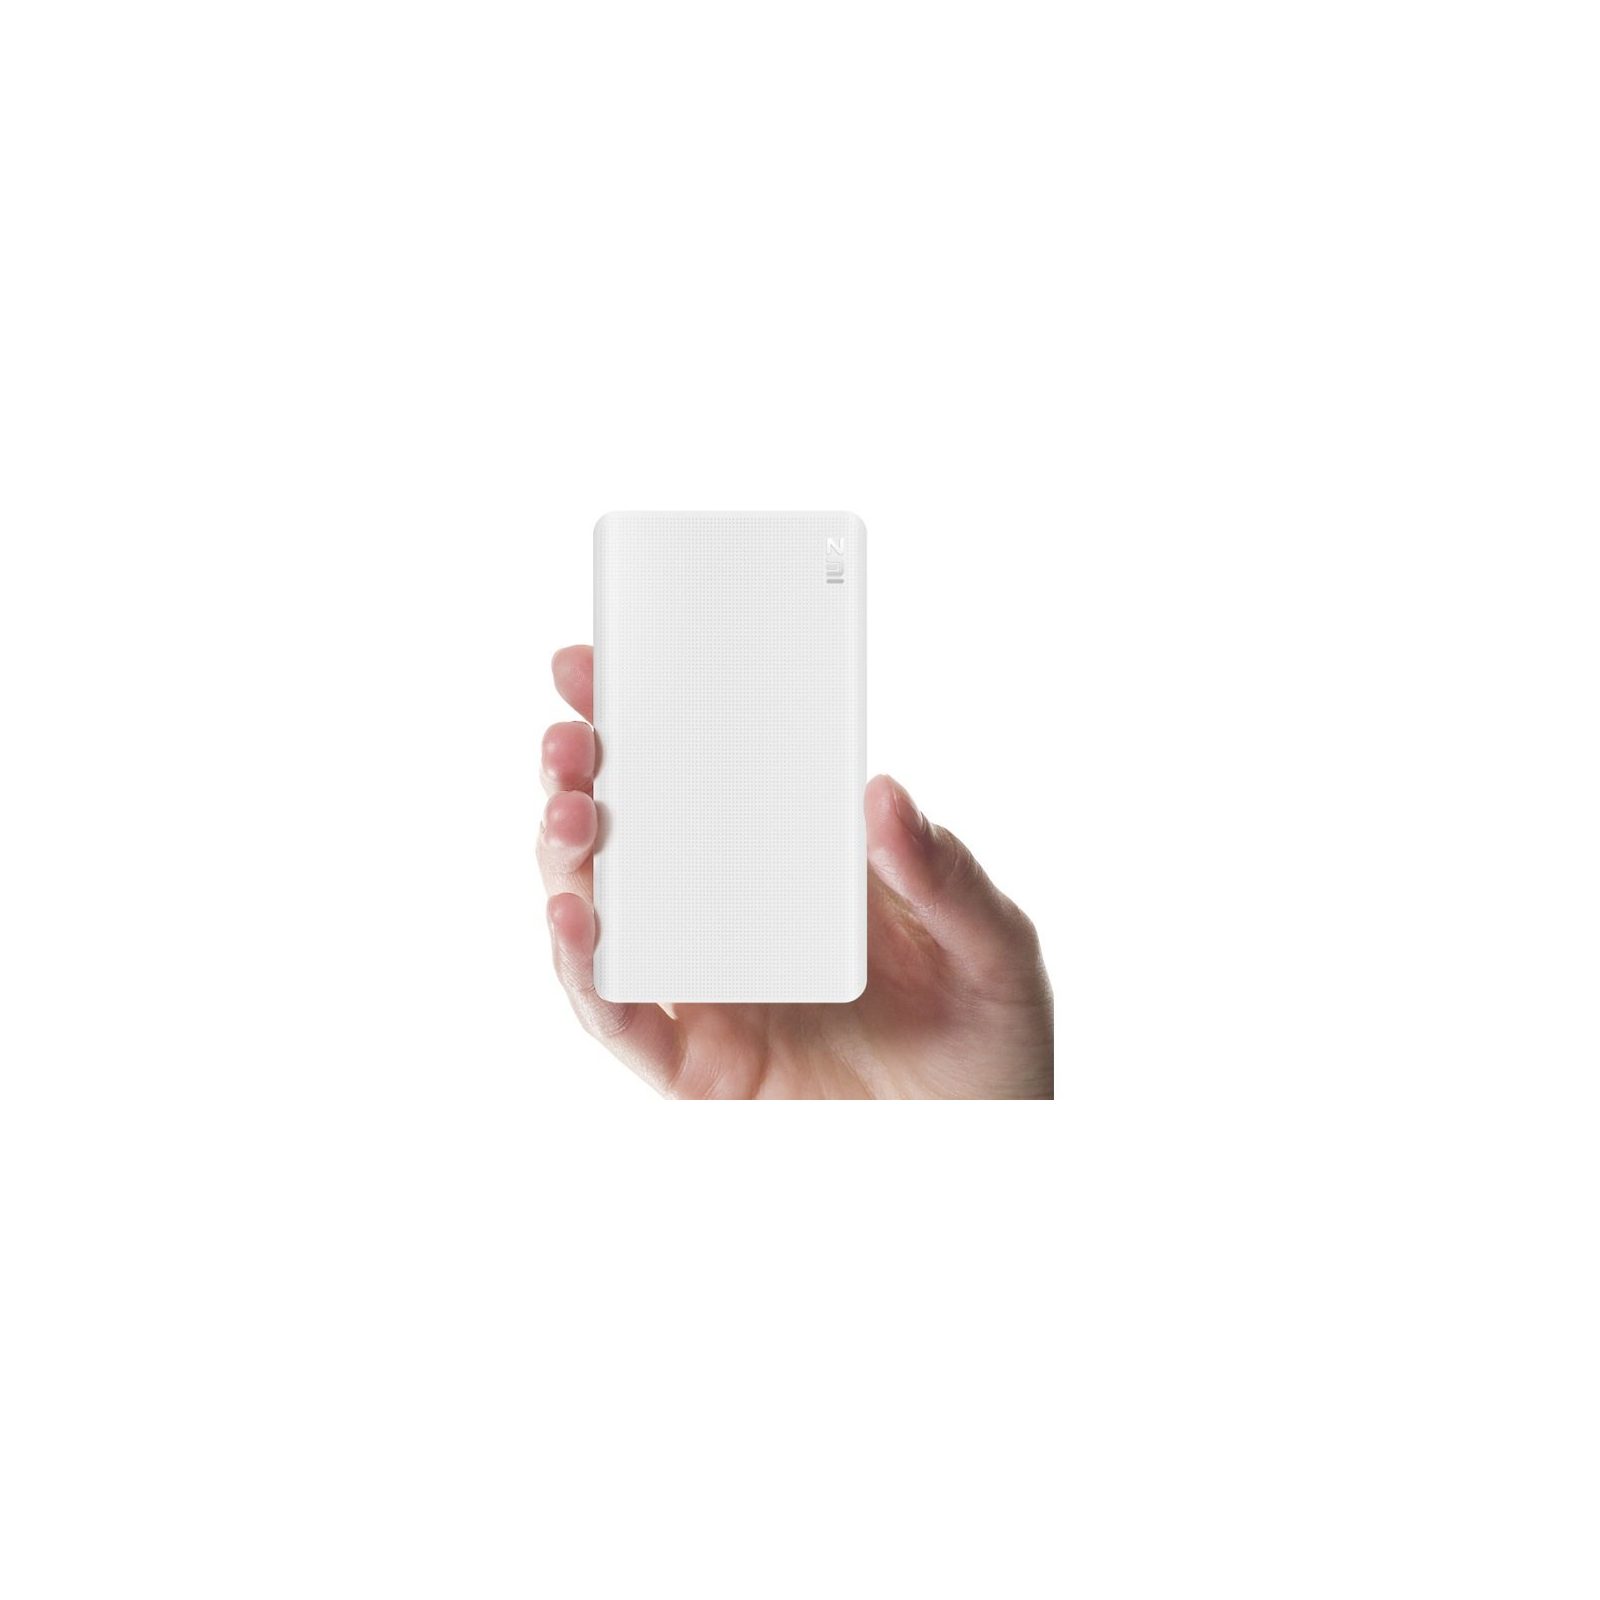 Батарея универсальная ZMI QB810 10000mAh Type-C White (Quick Charge 2.0) (QB810-WH) изображение 6